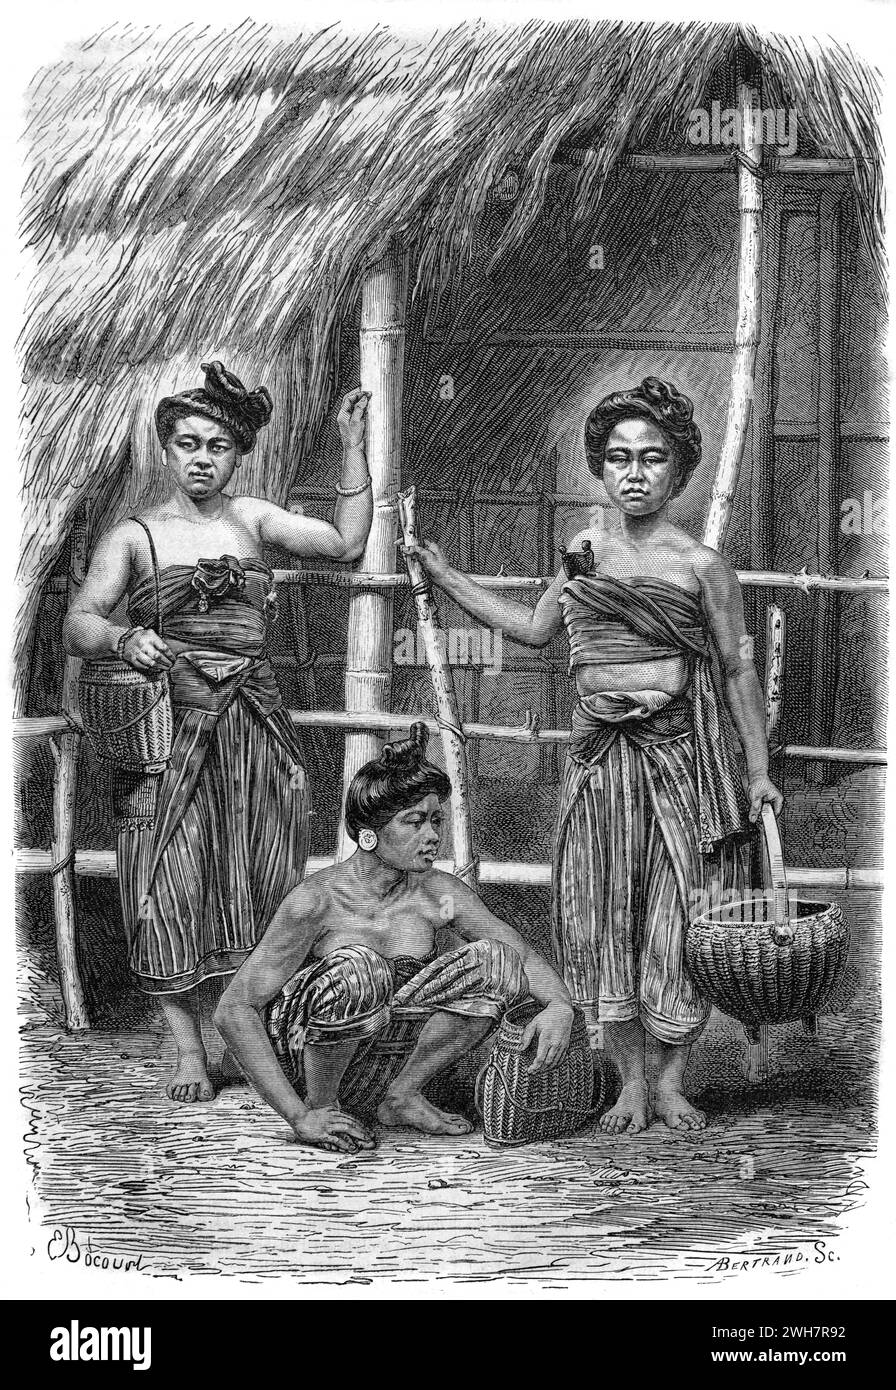 Femmes laotiennes ou laotiennes portant des vêtements ou des vêtements traditionnels à côté de leur Bamboo and Grass Village Hut Laos. Gravure vintage ou historique ou illustration 1863 Banque D'Images